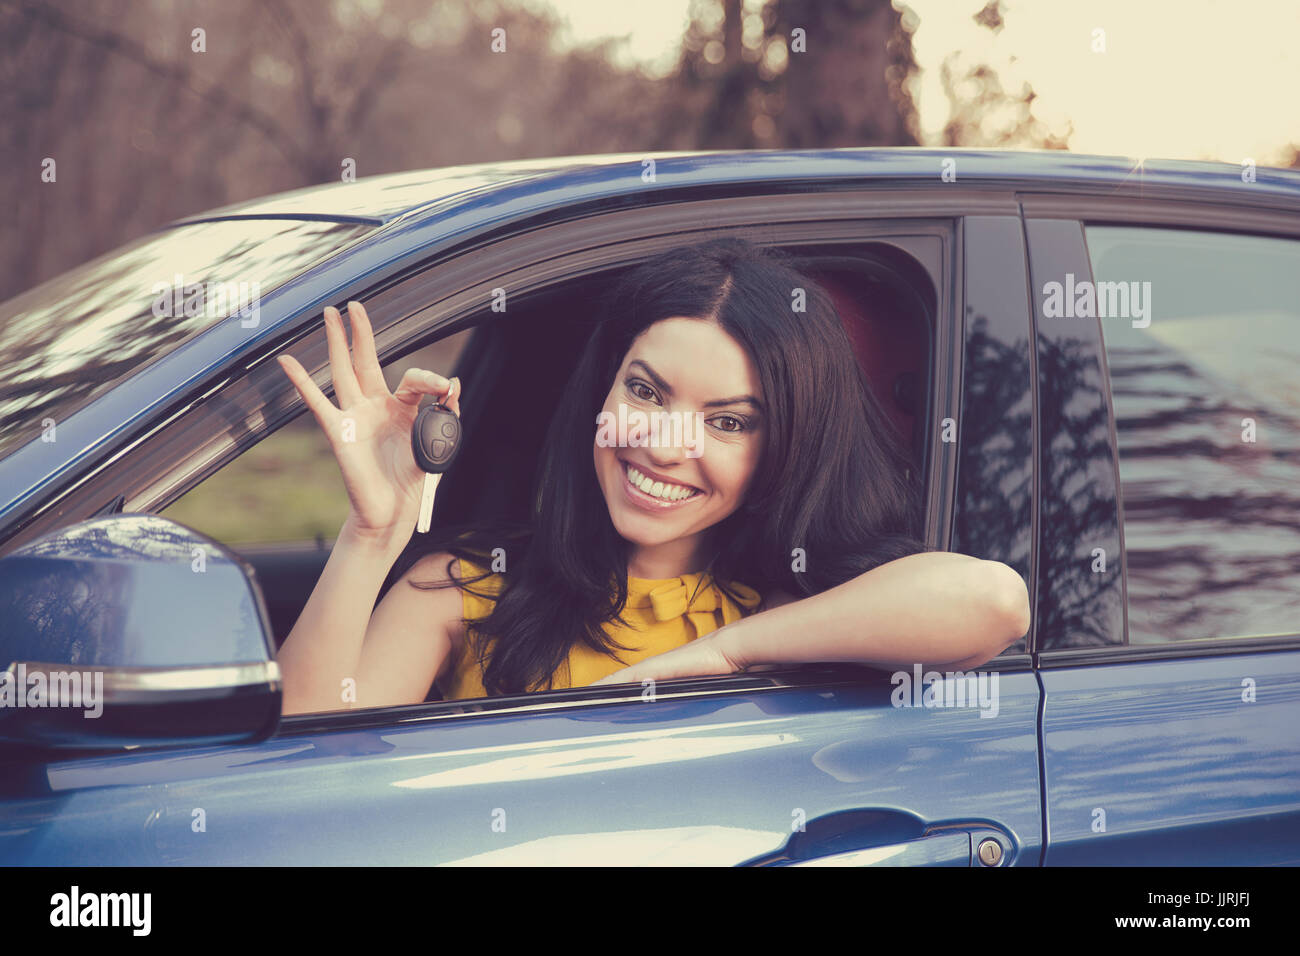 Affaires auto, vente, le consumérisme concept. Happy woman showing car key Banque D'Images